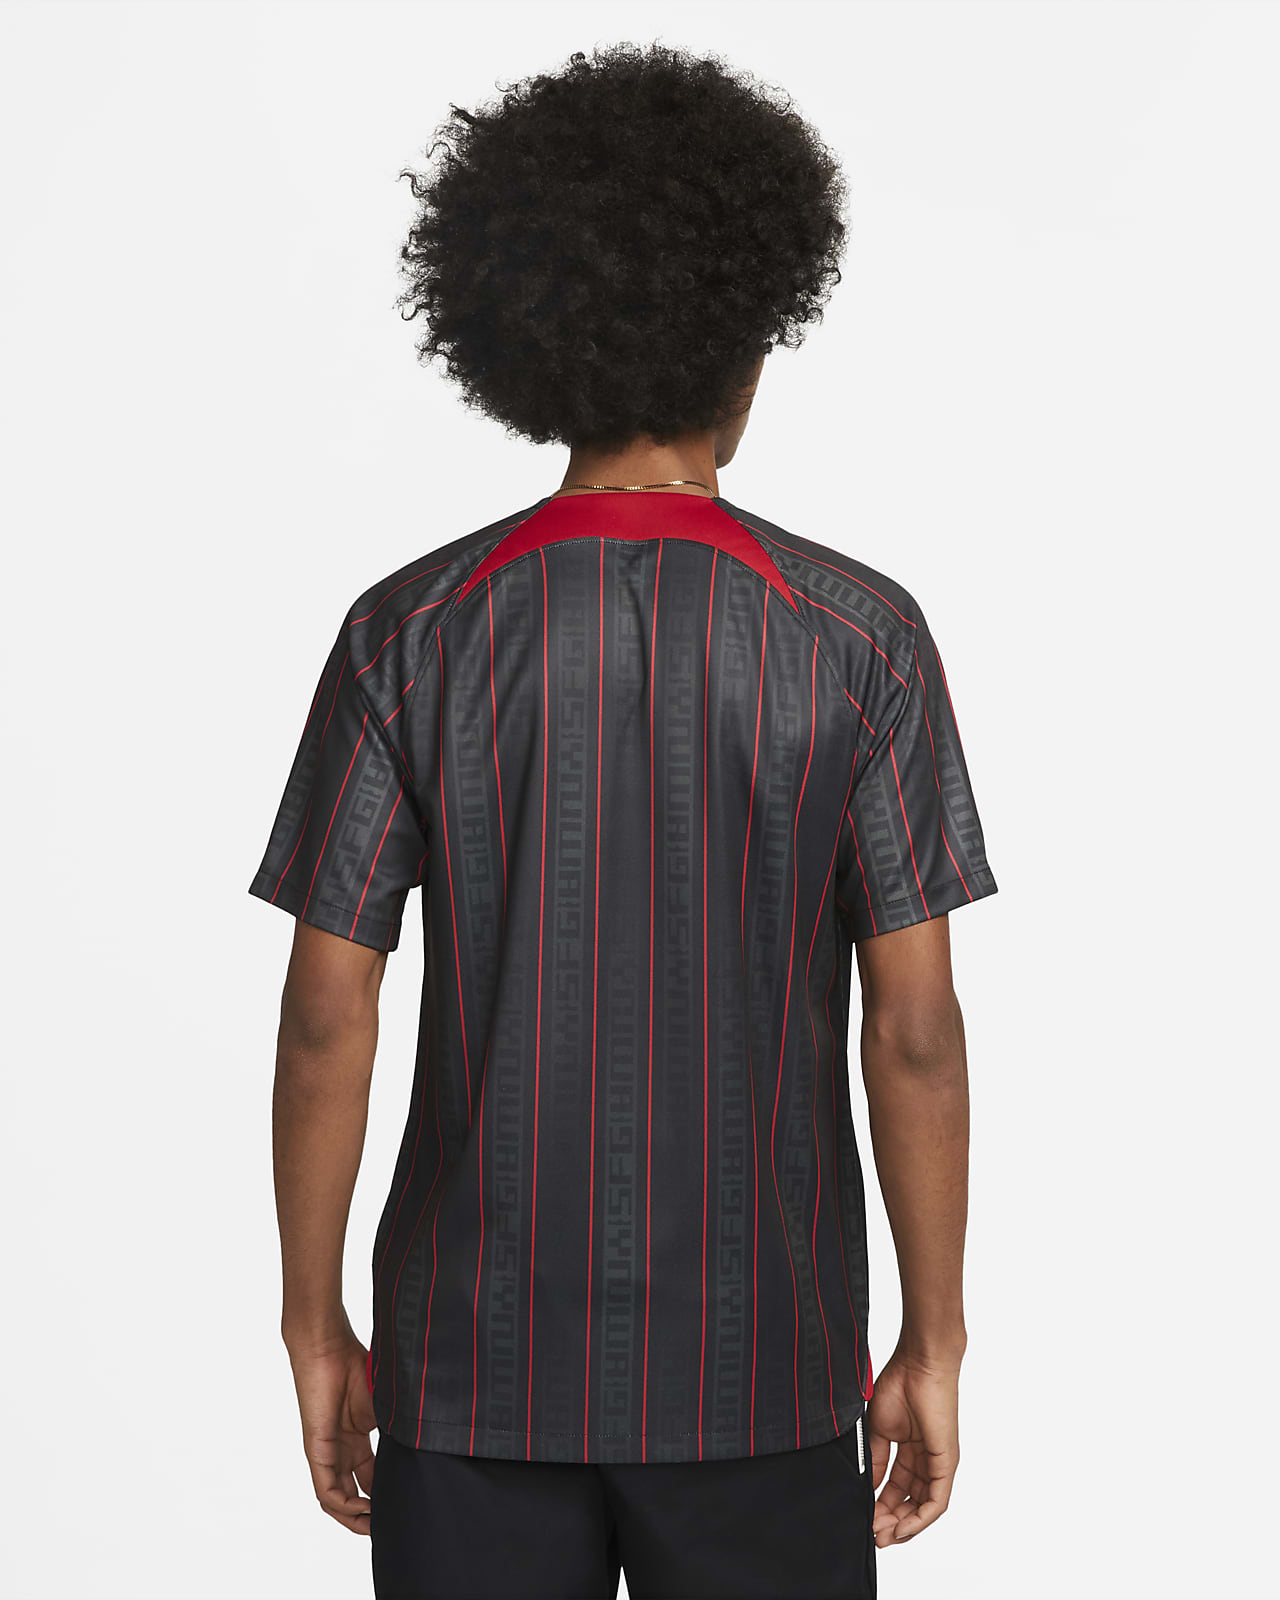 Nike Lebron James T-Shirts for Men